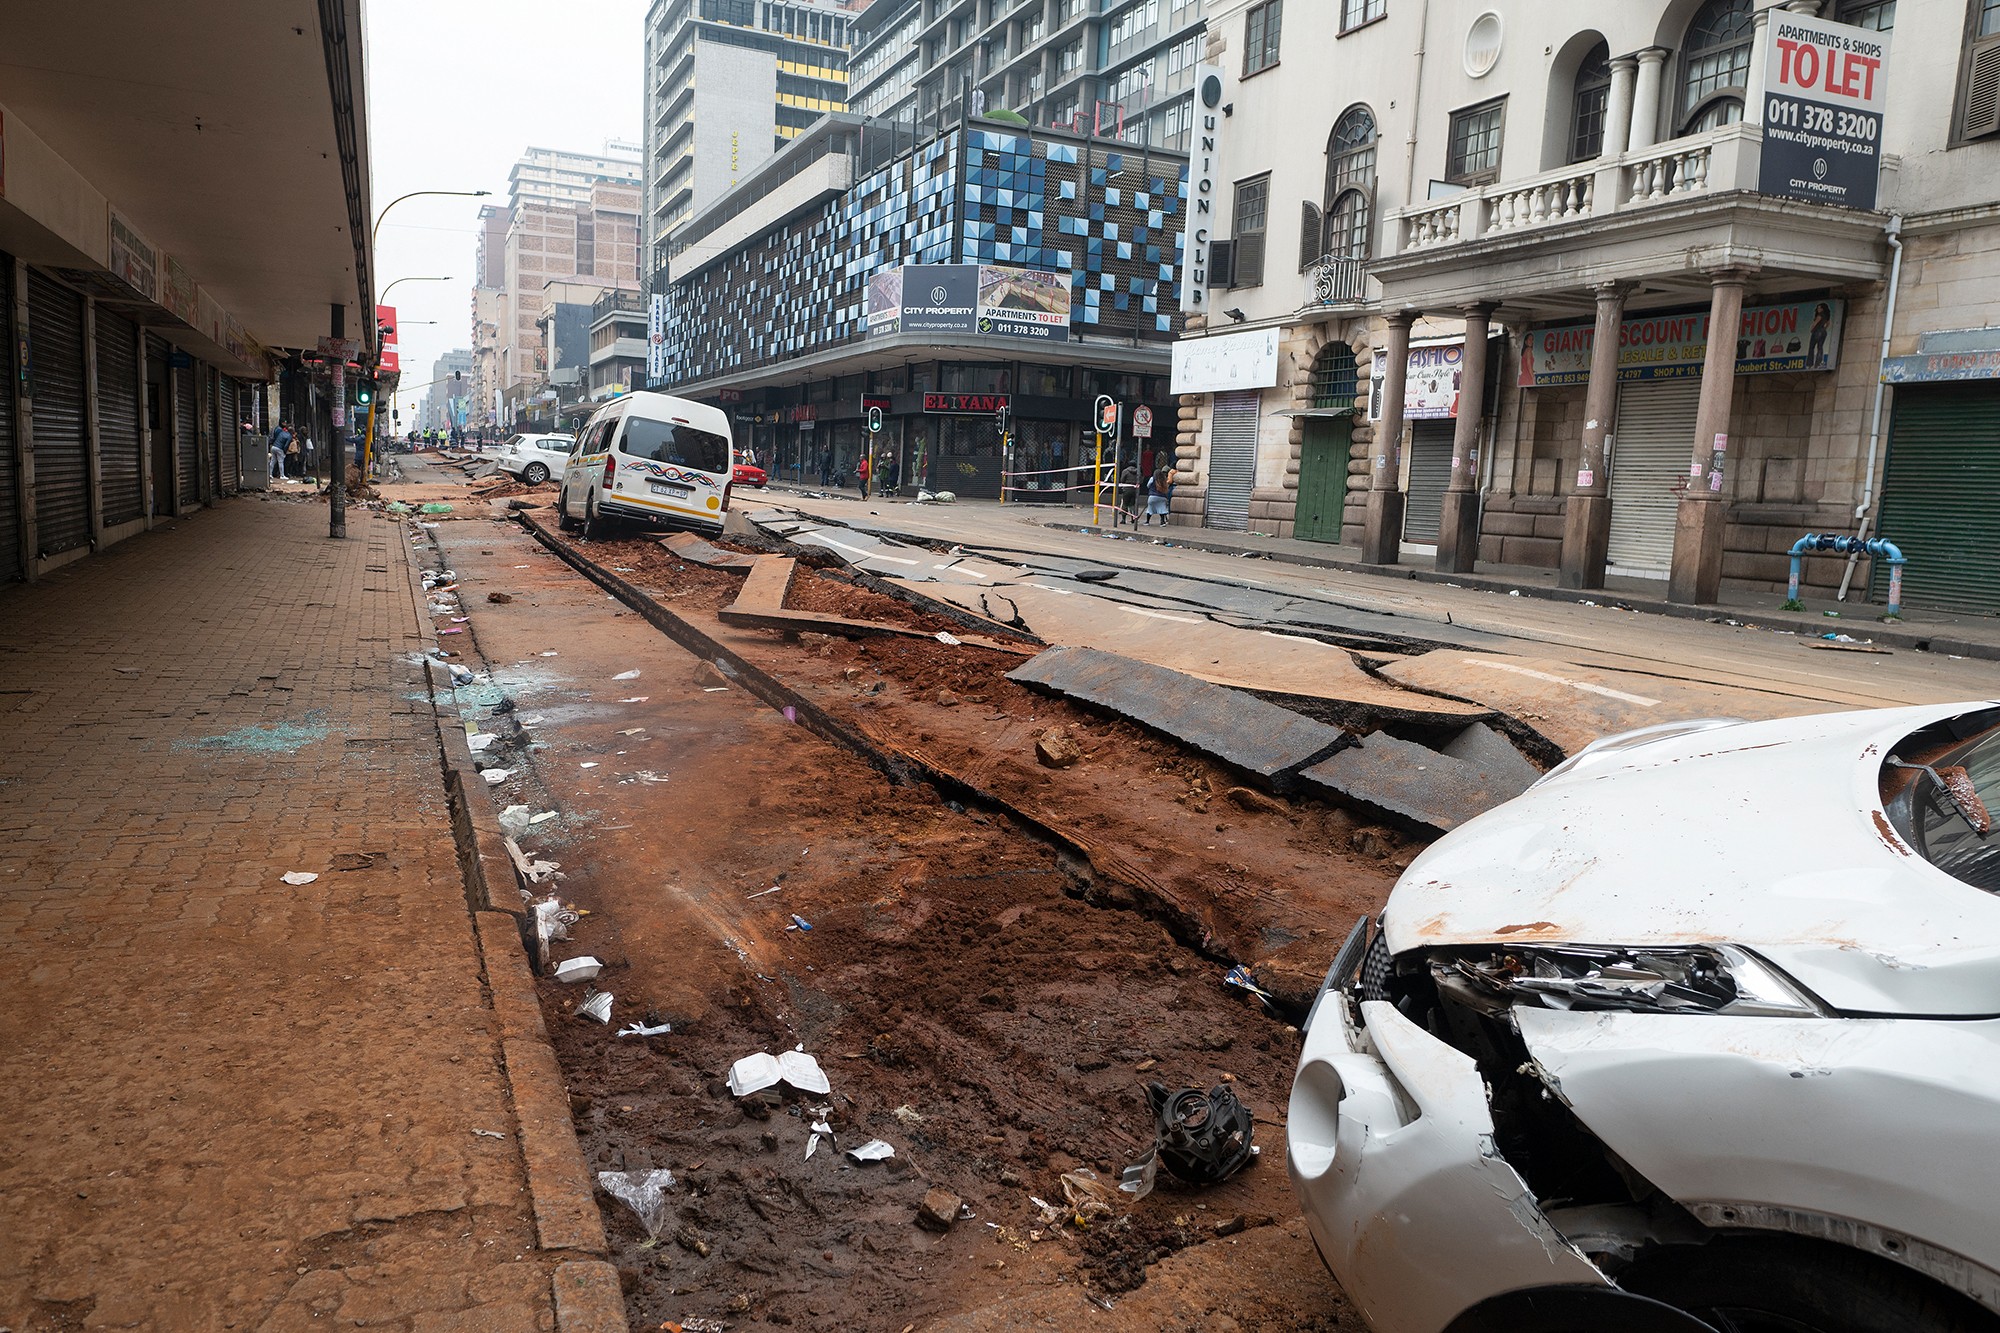 Die durch die Gasexplosion beschädigte Straße in Johannesburg (Bild: Luca Sola/AFP)